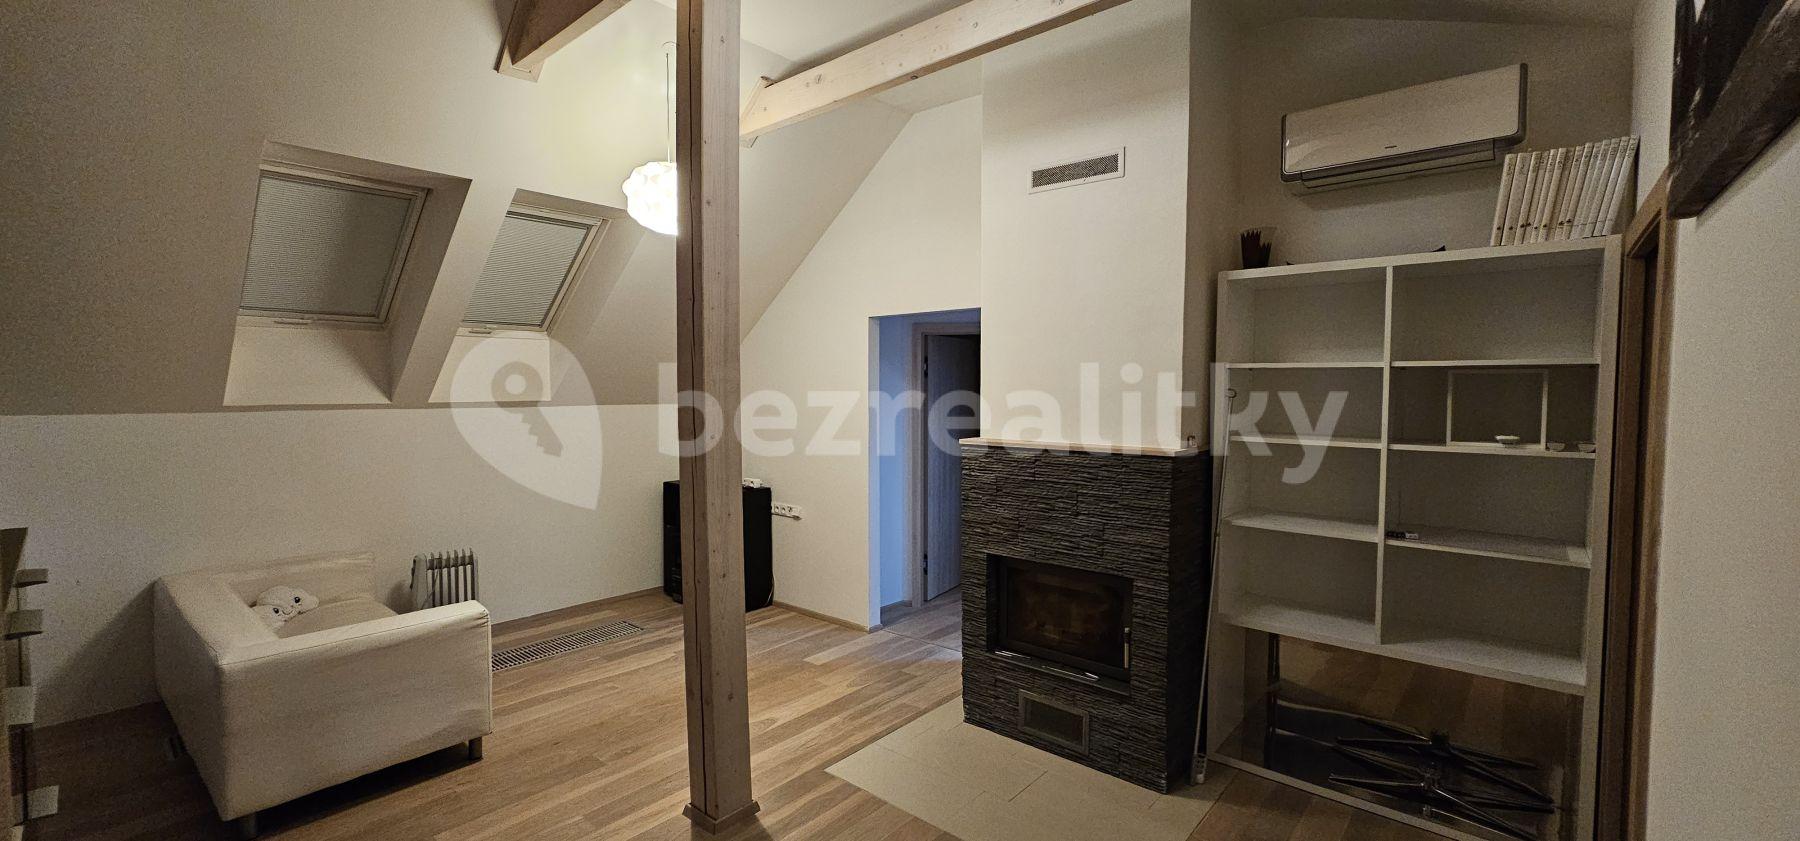 1 bedroom with open-plan kitchen flat to rent, 70 m², Vojtěšská, Neratovice, Středočeský Region